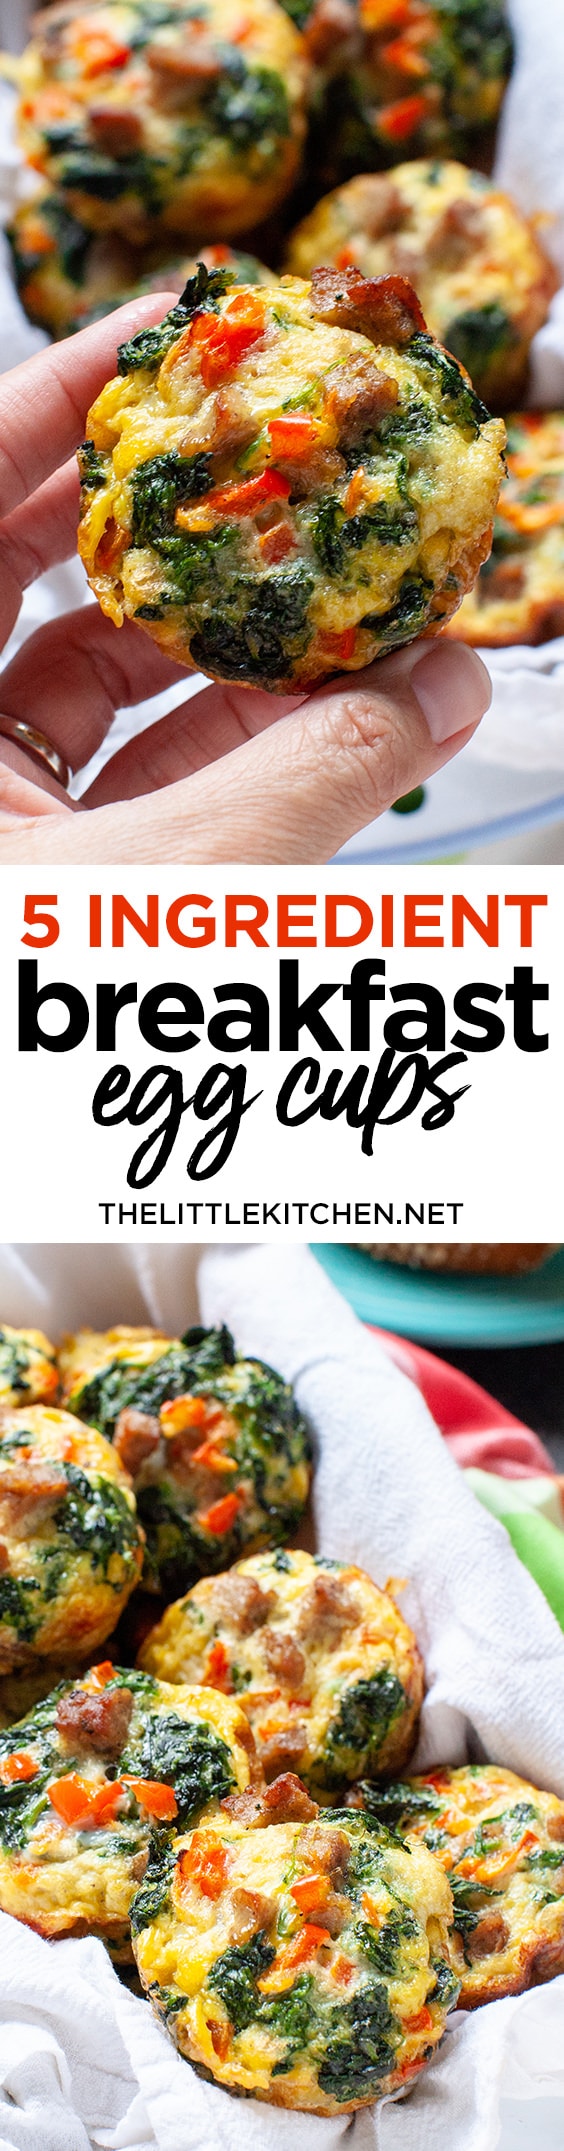 Five Ingredient Breakfast Egg Cups from thelittlekitchen.net